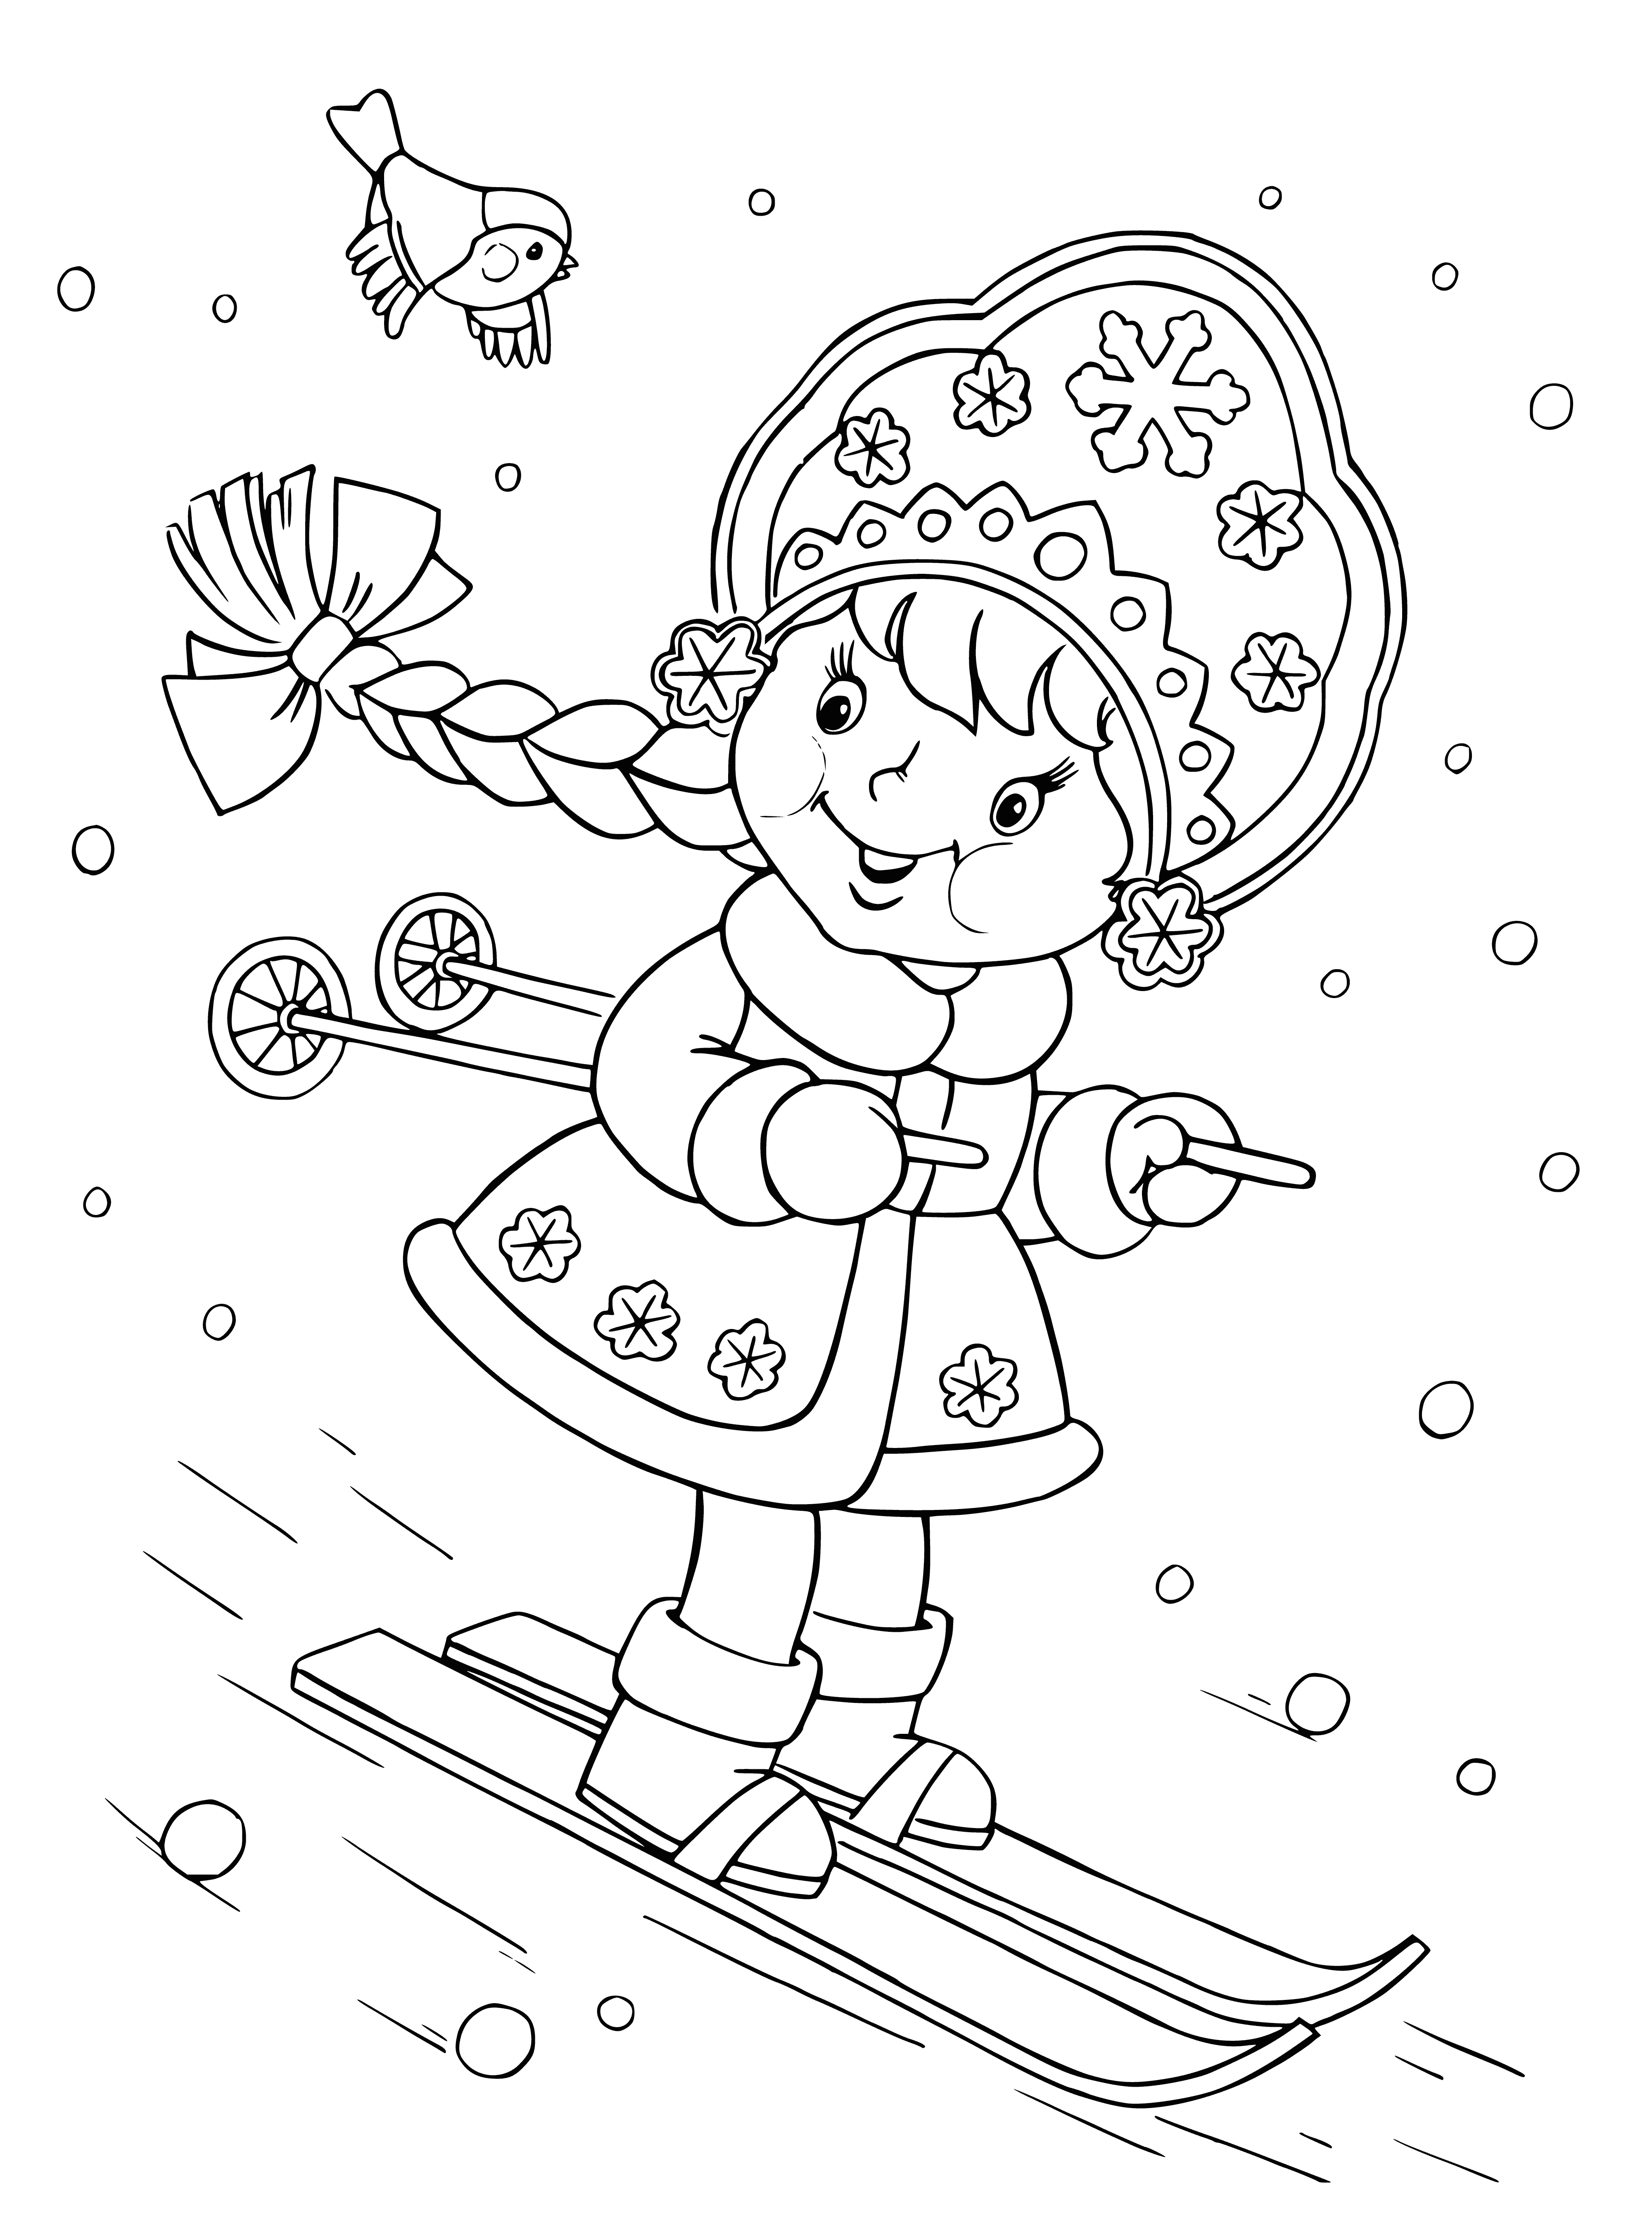 Snow Maiden sur des skis coloriage